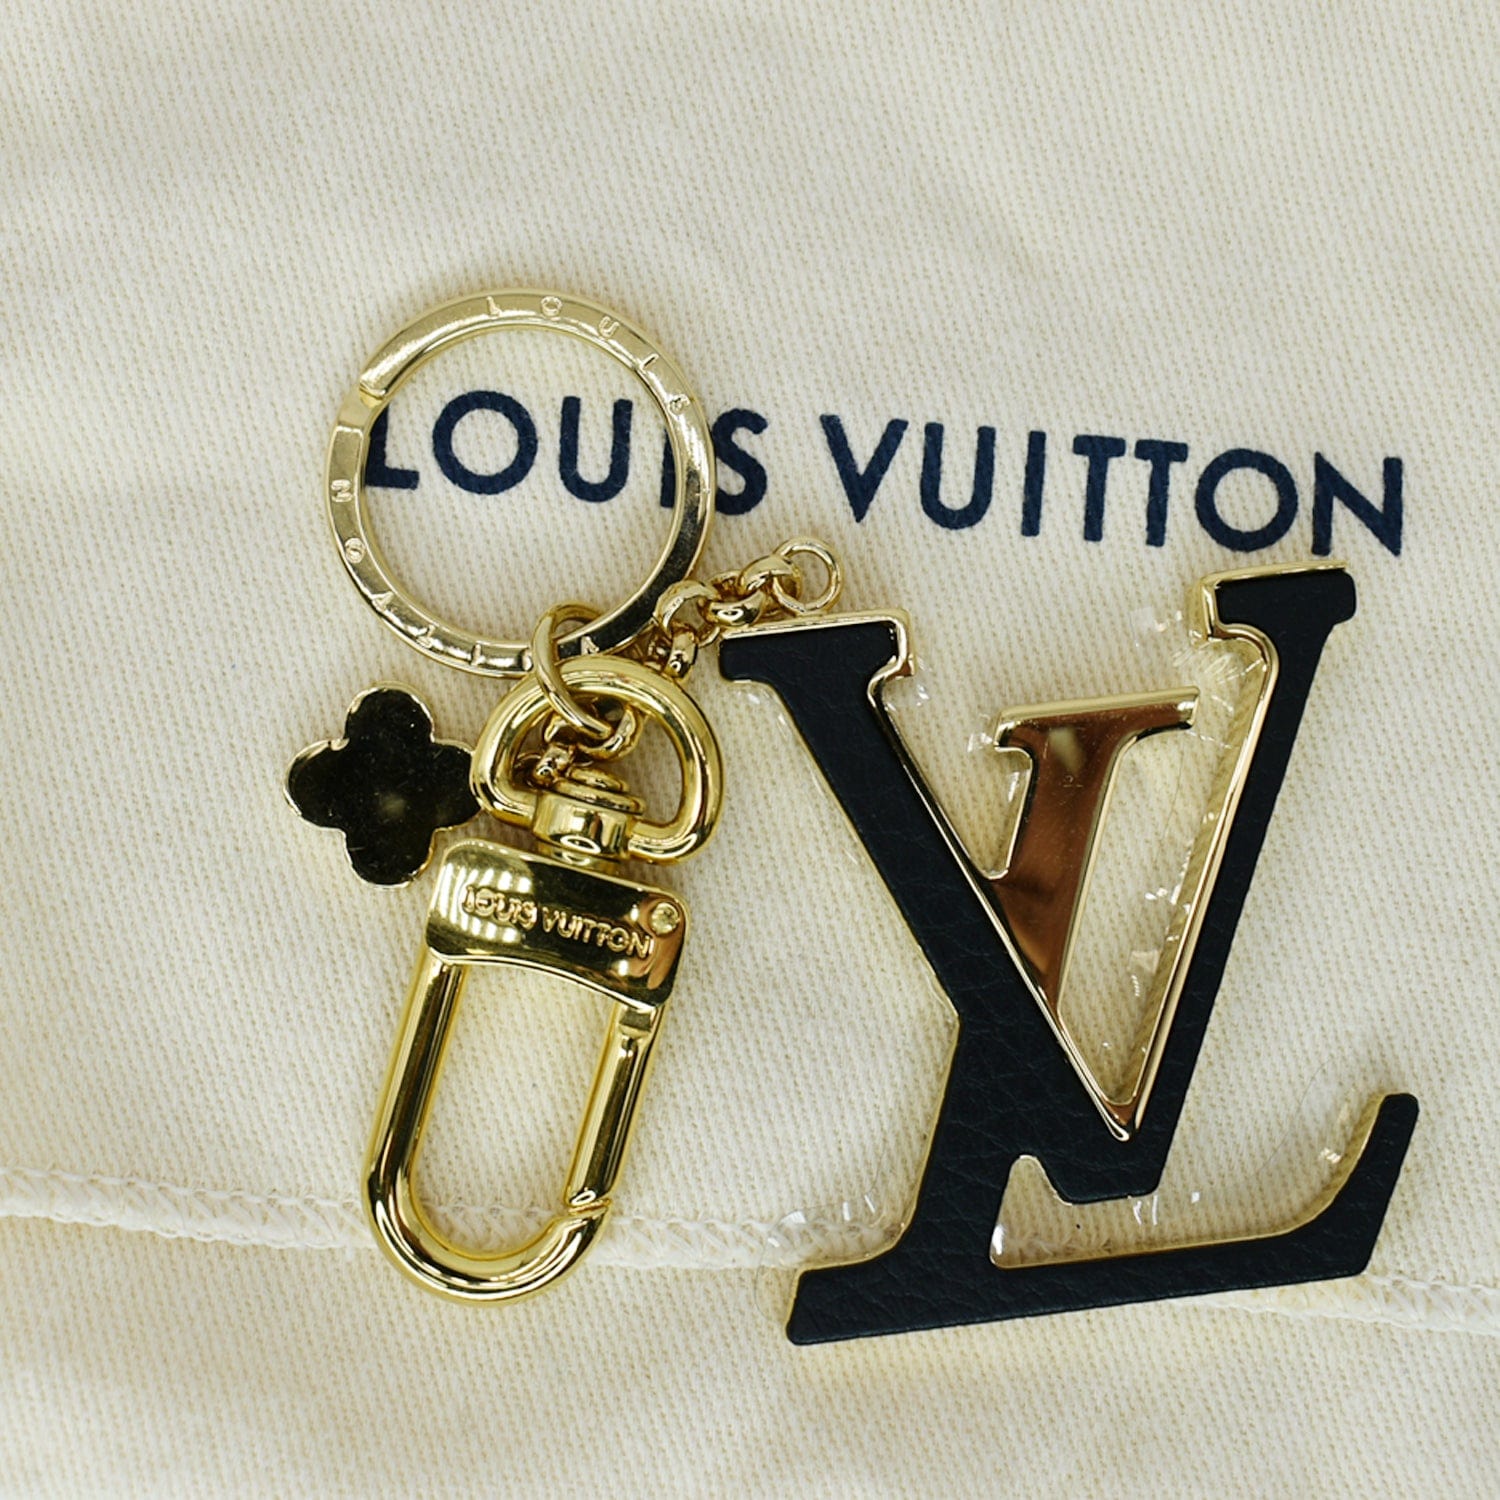 LV key pouch dupe LV Key Holder Louis Vuitton Key Pouch price LV